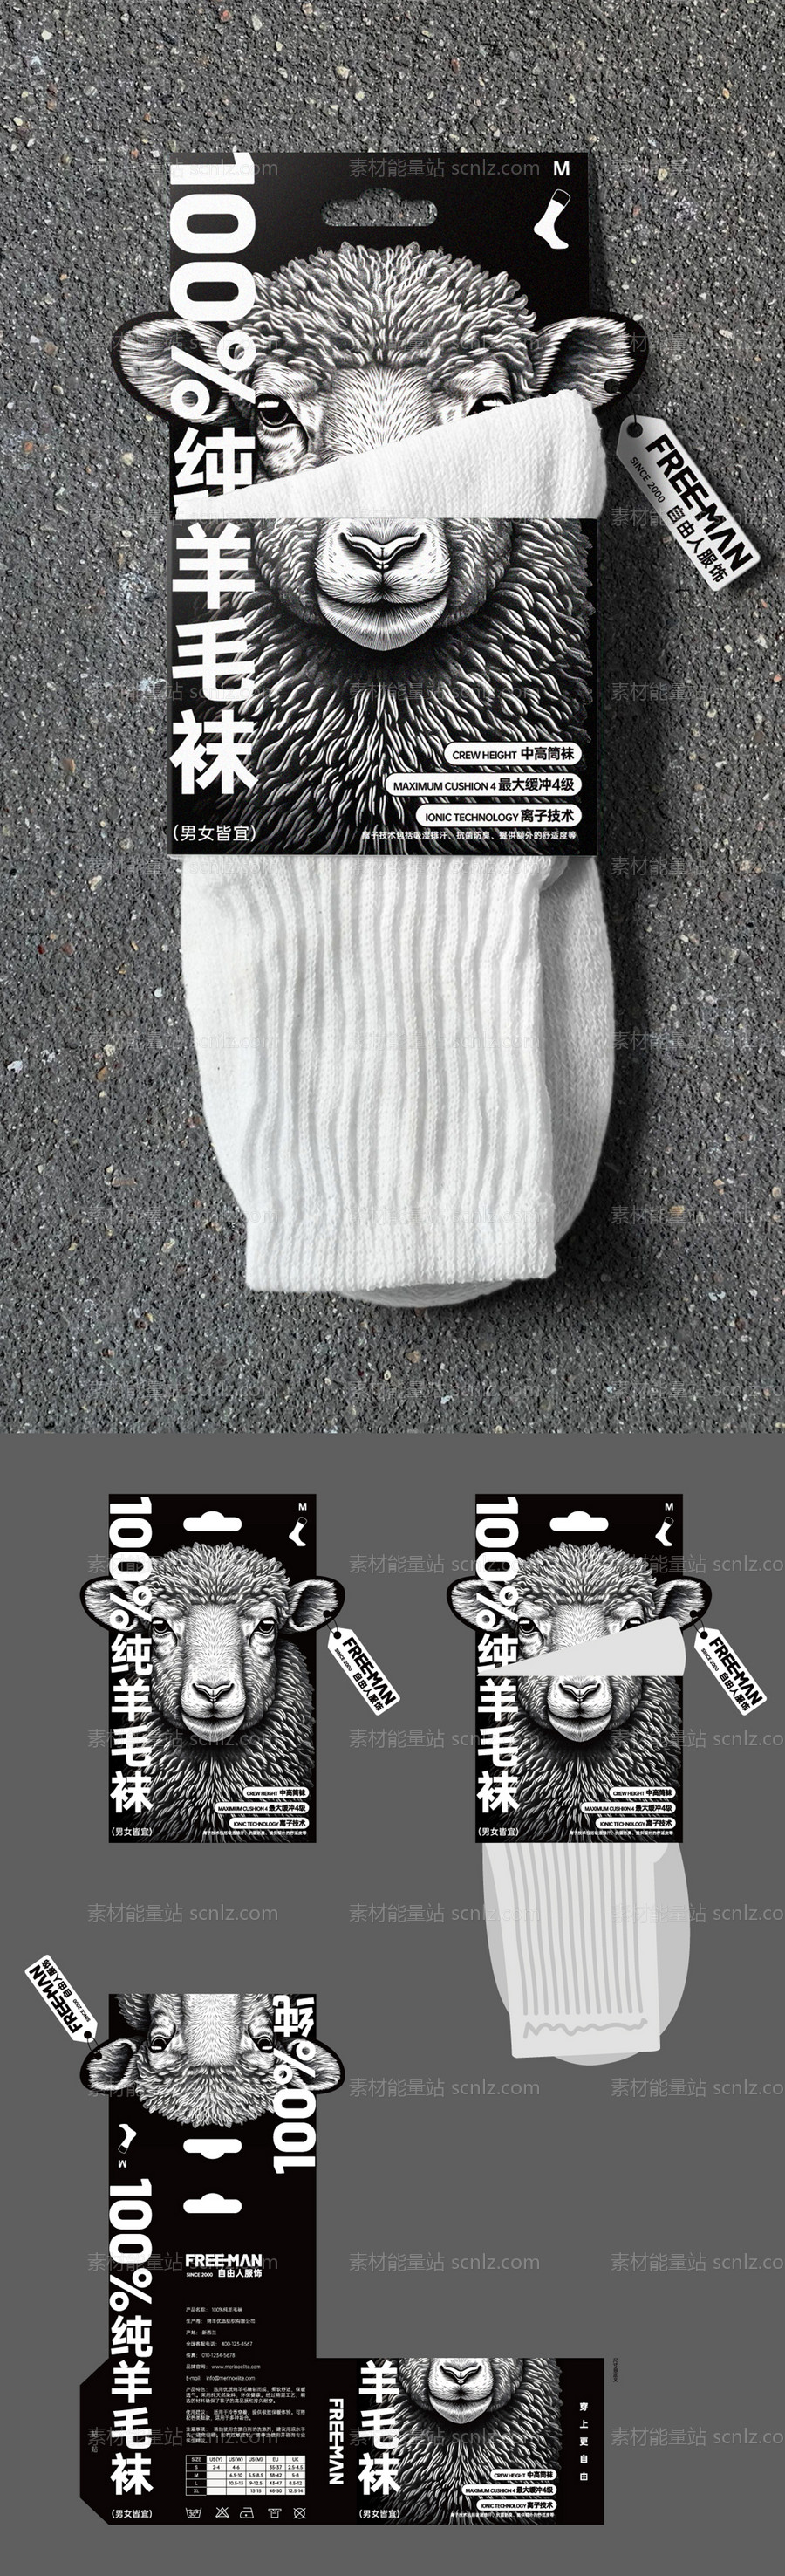 素材能量站-纯羊毛袜创意包装